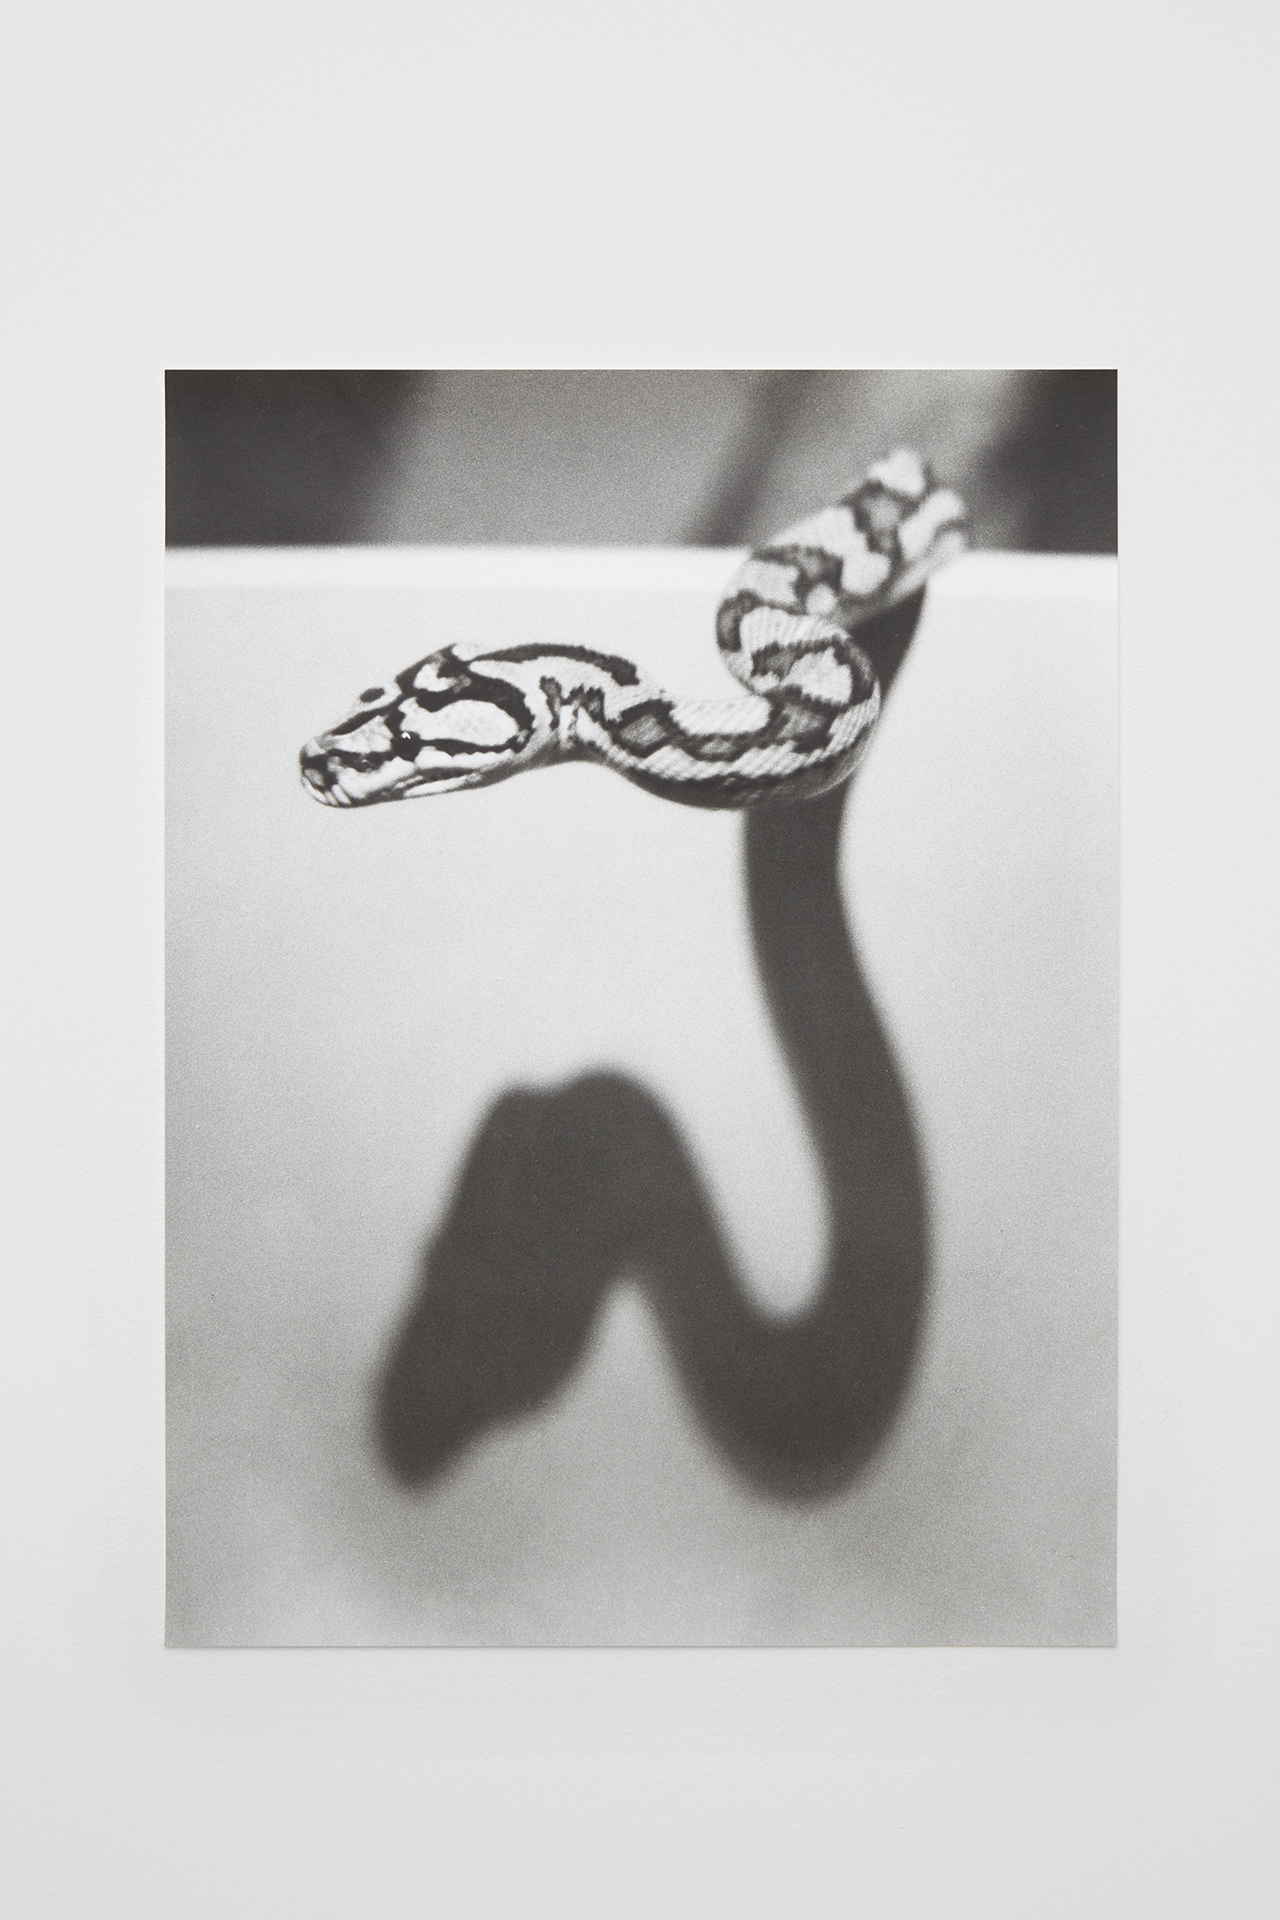 Jochen Lempert, „Schatten/ Schlange“, 2022, Silver gelatin print, 38 x 28.3 cm